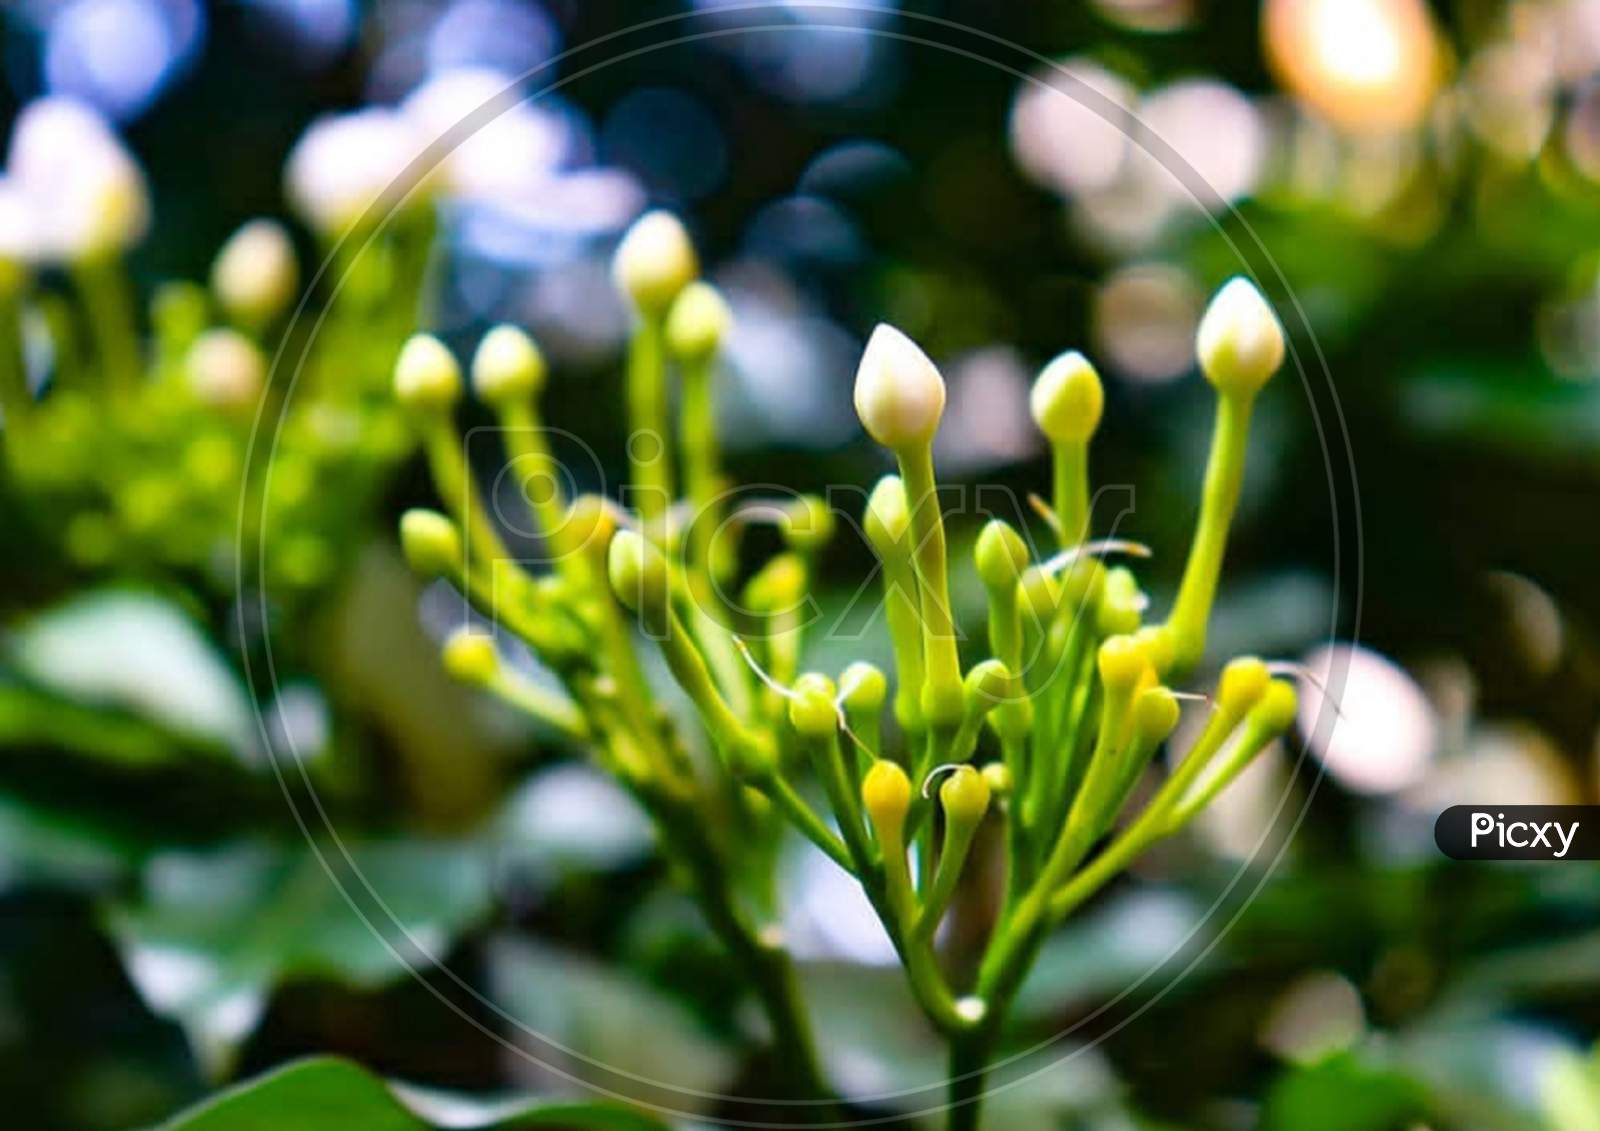 Close-up×Remove  Branch×Remove  Yellow×Remove  Flowering plant×Remove  Plant×Remove  Flower×Remove  Bud×Remove  Petal×Remove  Spring×Remove  Leaf×Remove